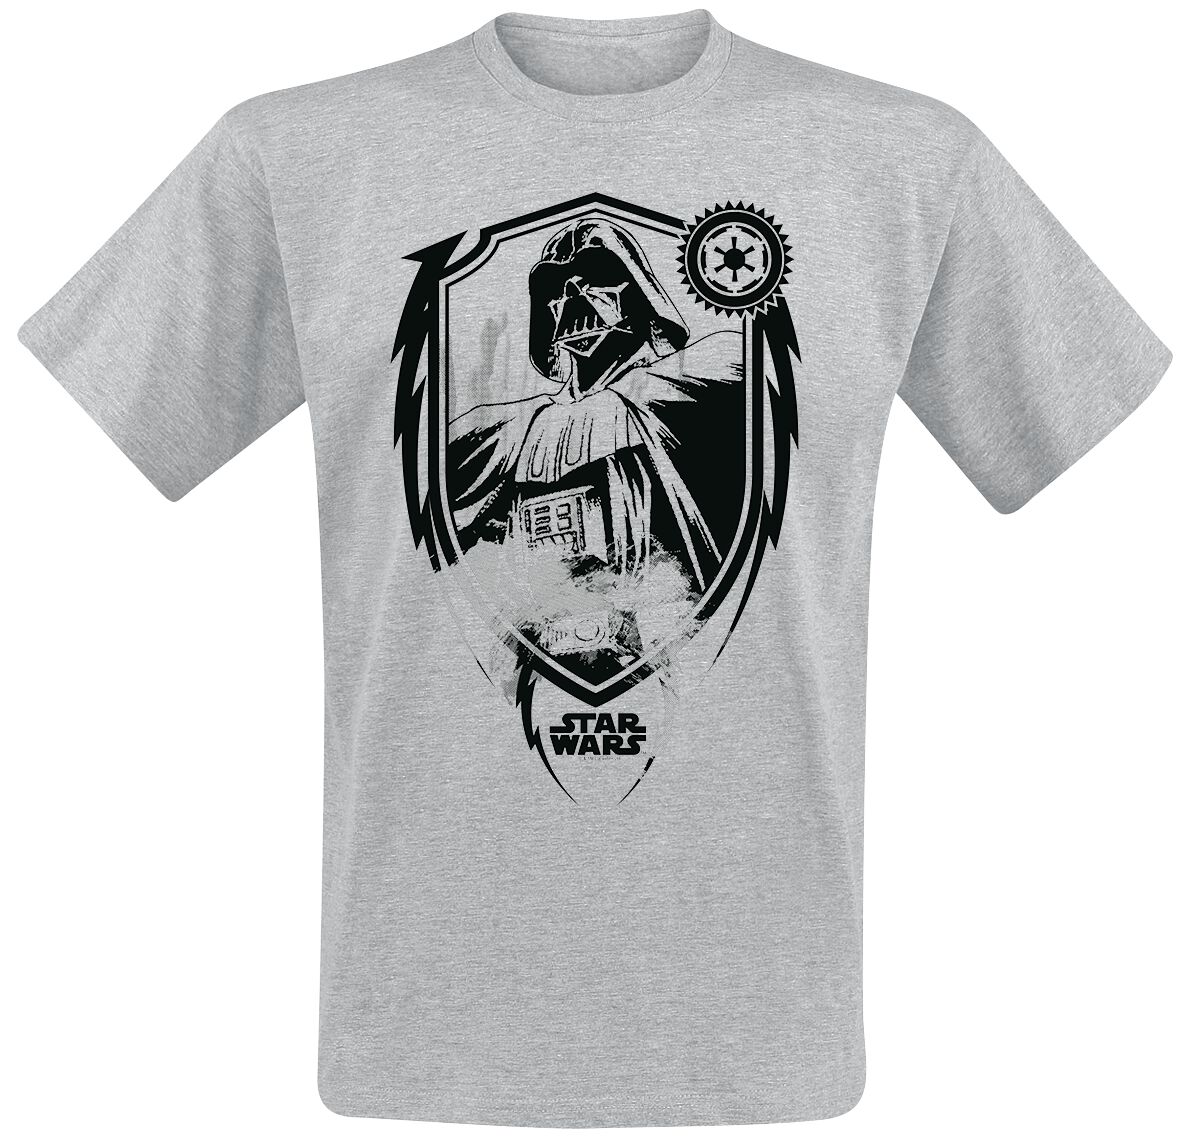 Star Wars Darth Vader Shield T-Shirt grey